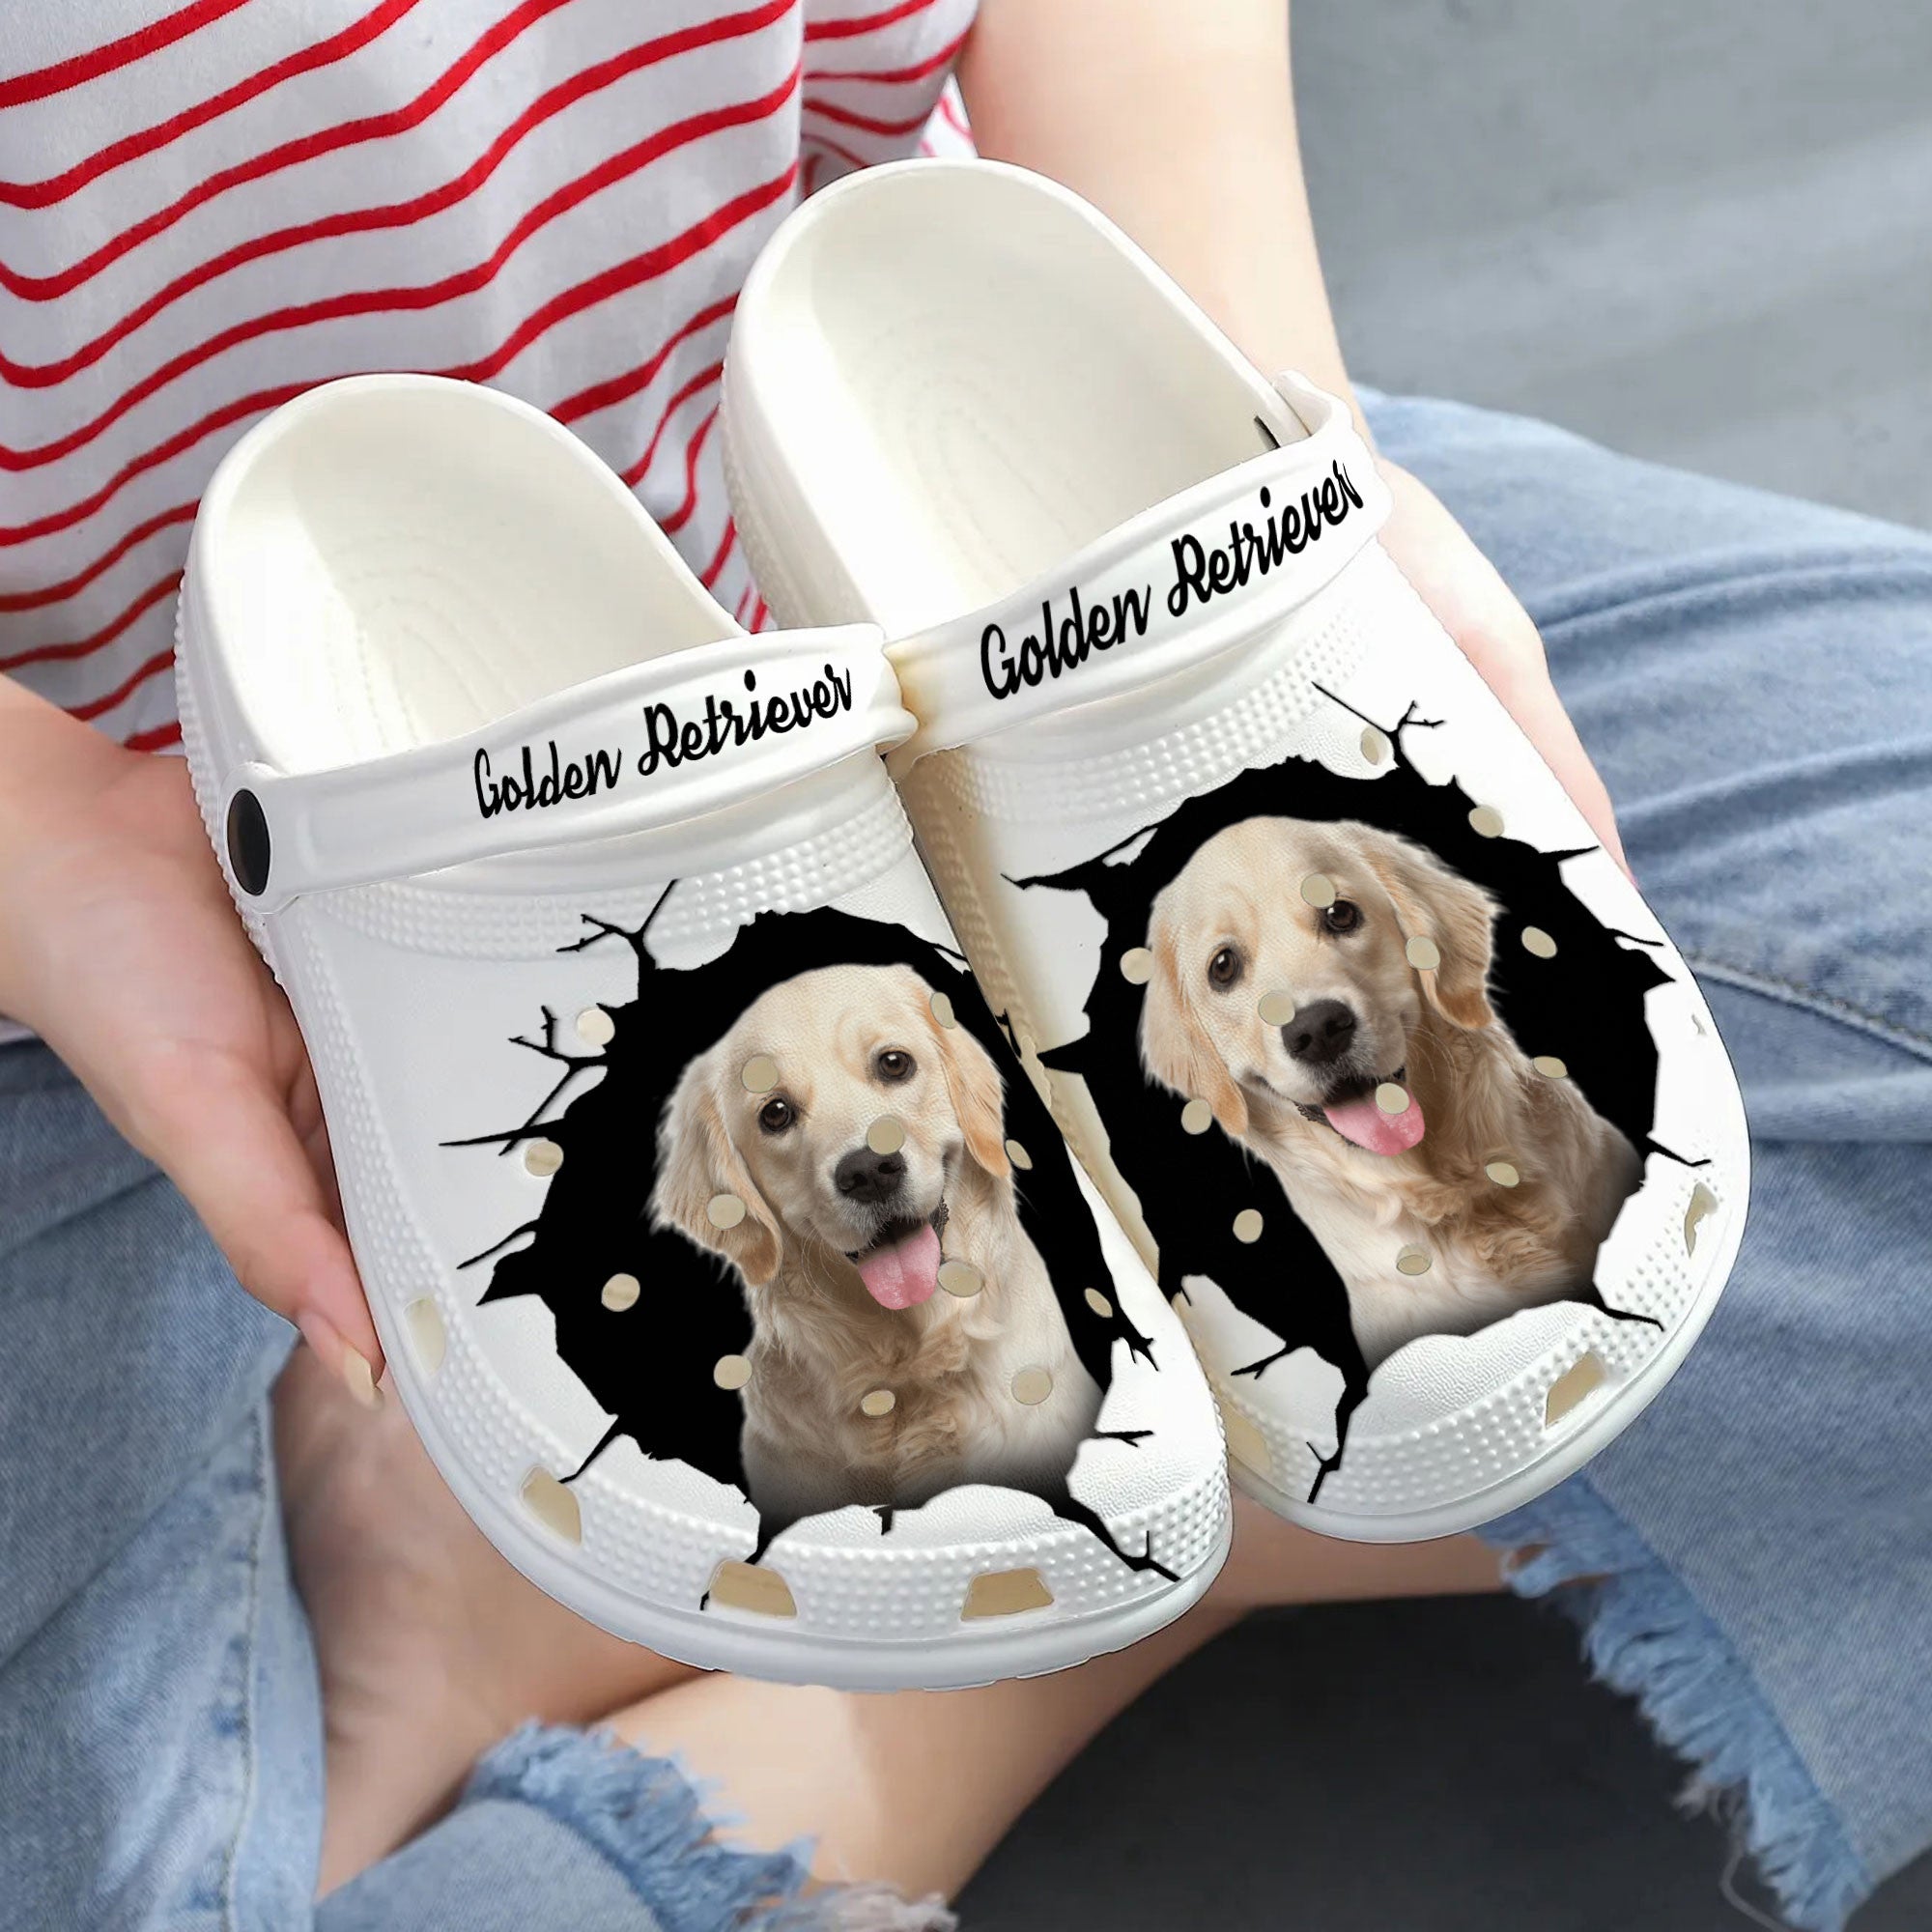 Golden Retriever - 3D Graphic Custom Name Crocs Shoes